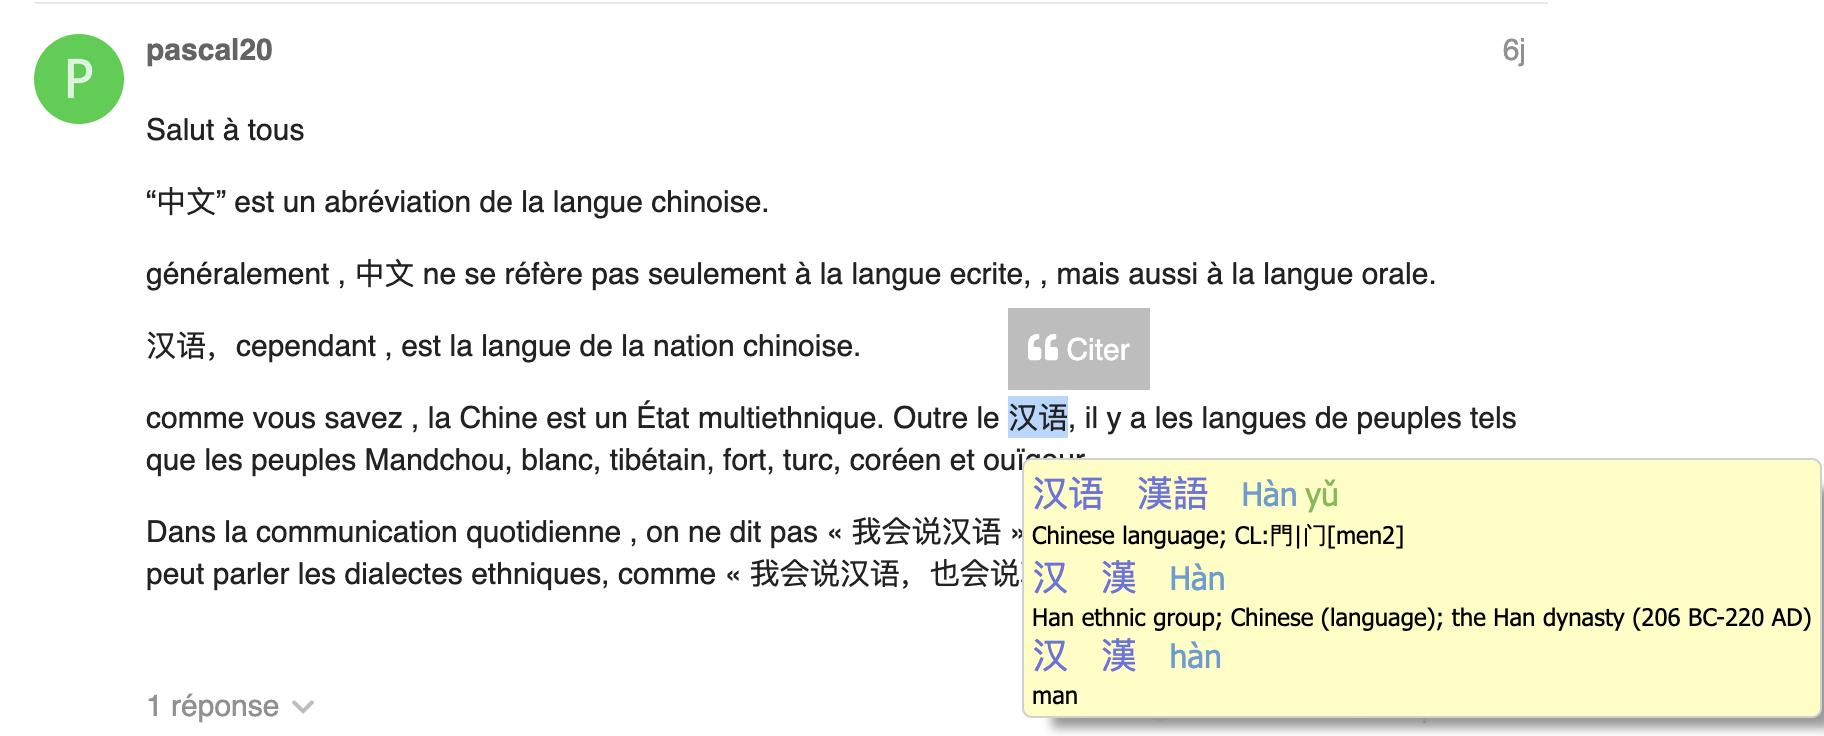 Je T Aime En Chinois Google Traduction Pinyin sur le forum - Vie du forum - Forum Chinois Tips